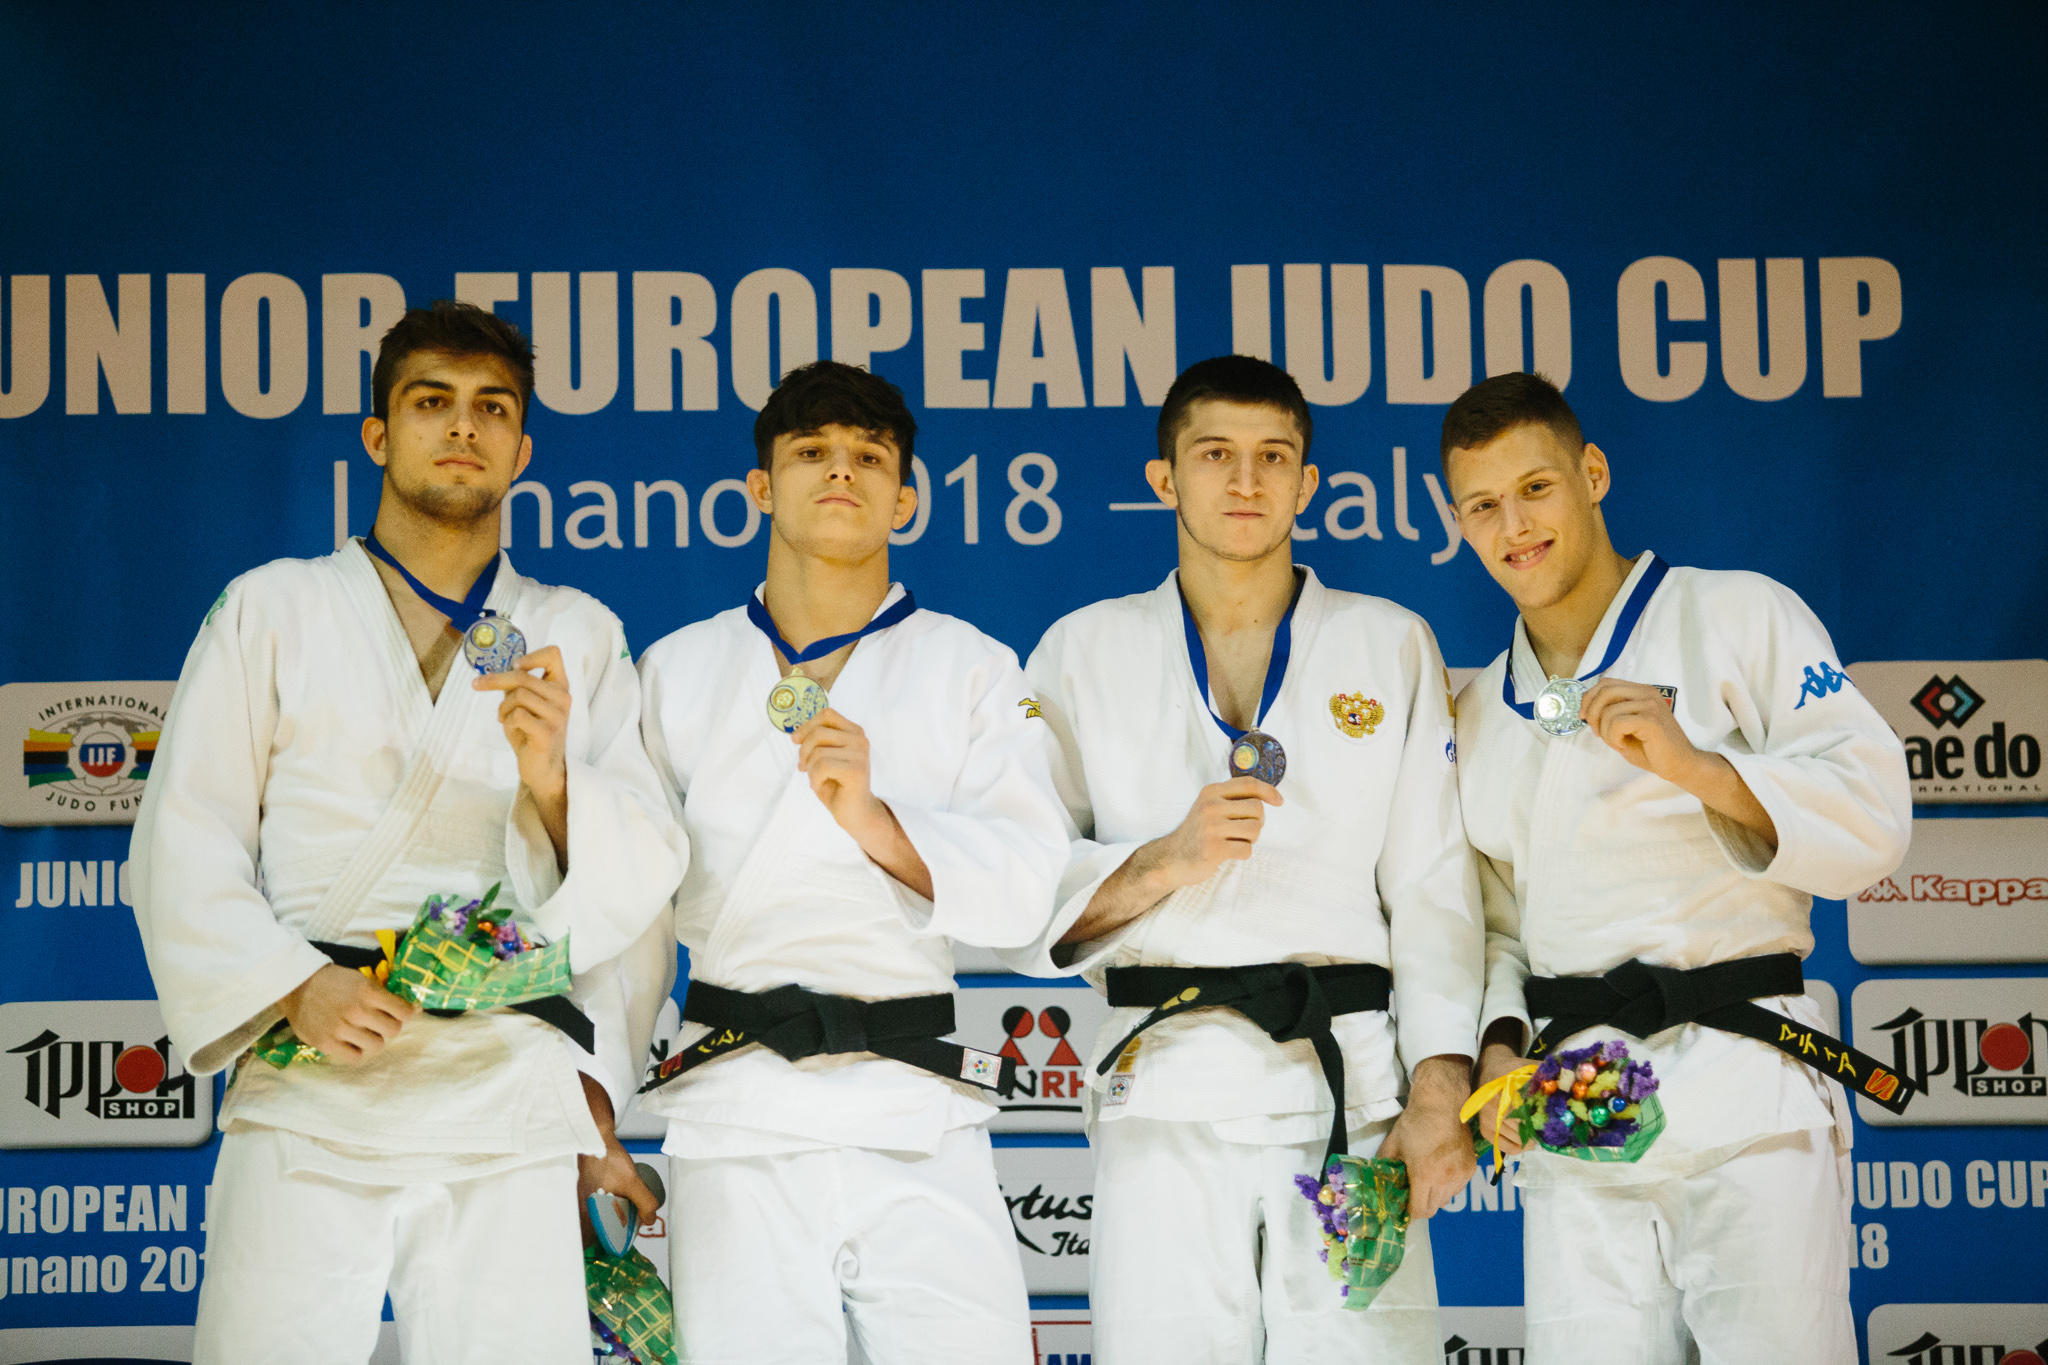 European Cup Junior a Lignano, Italia sul podio con Mazzi, Prosdocimo e Mella